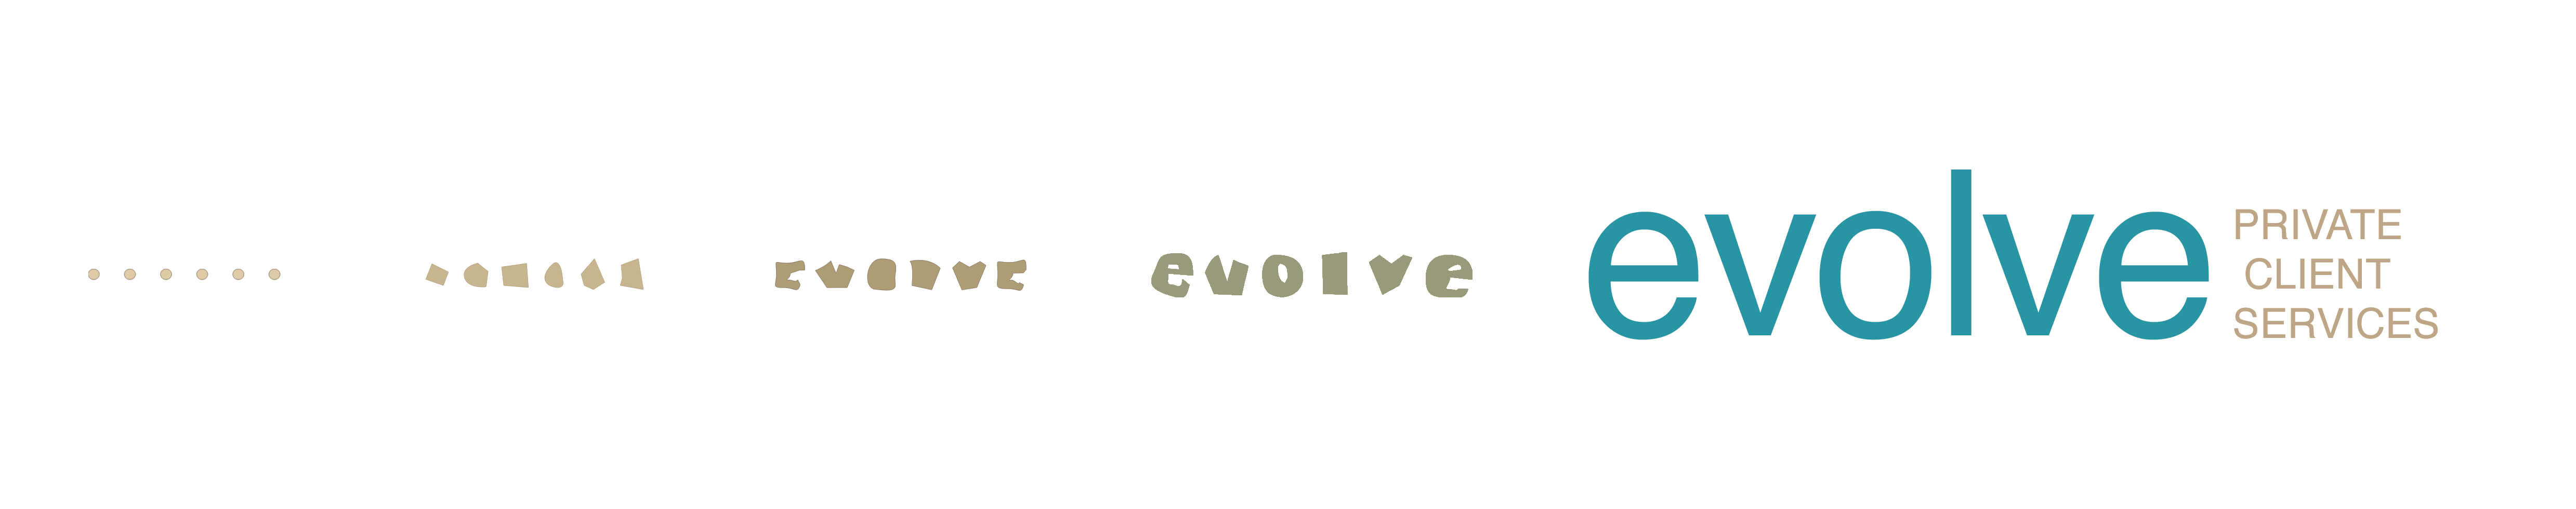 new evolve logo